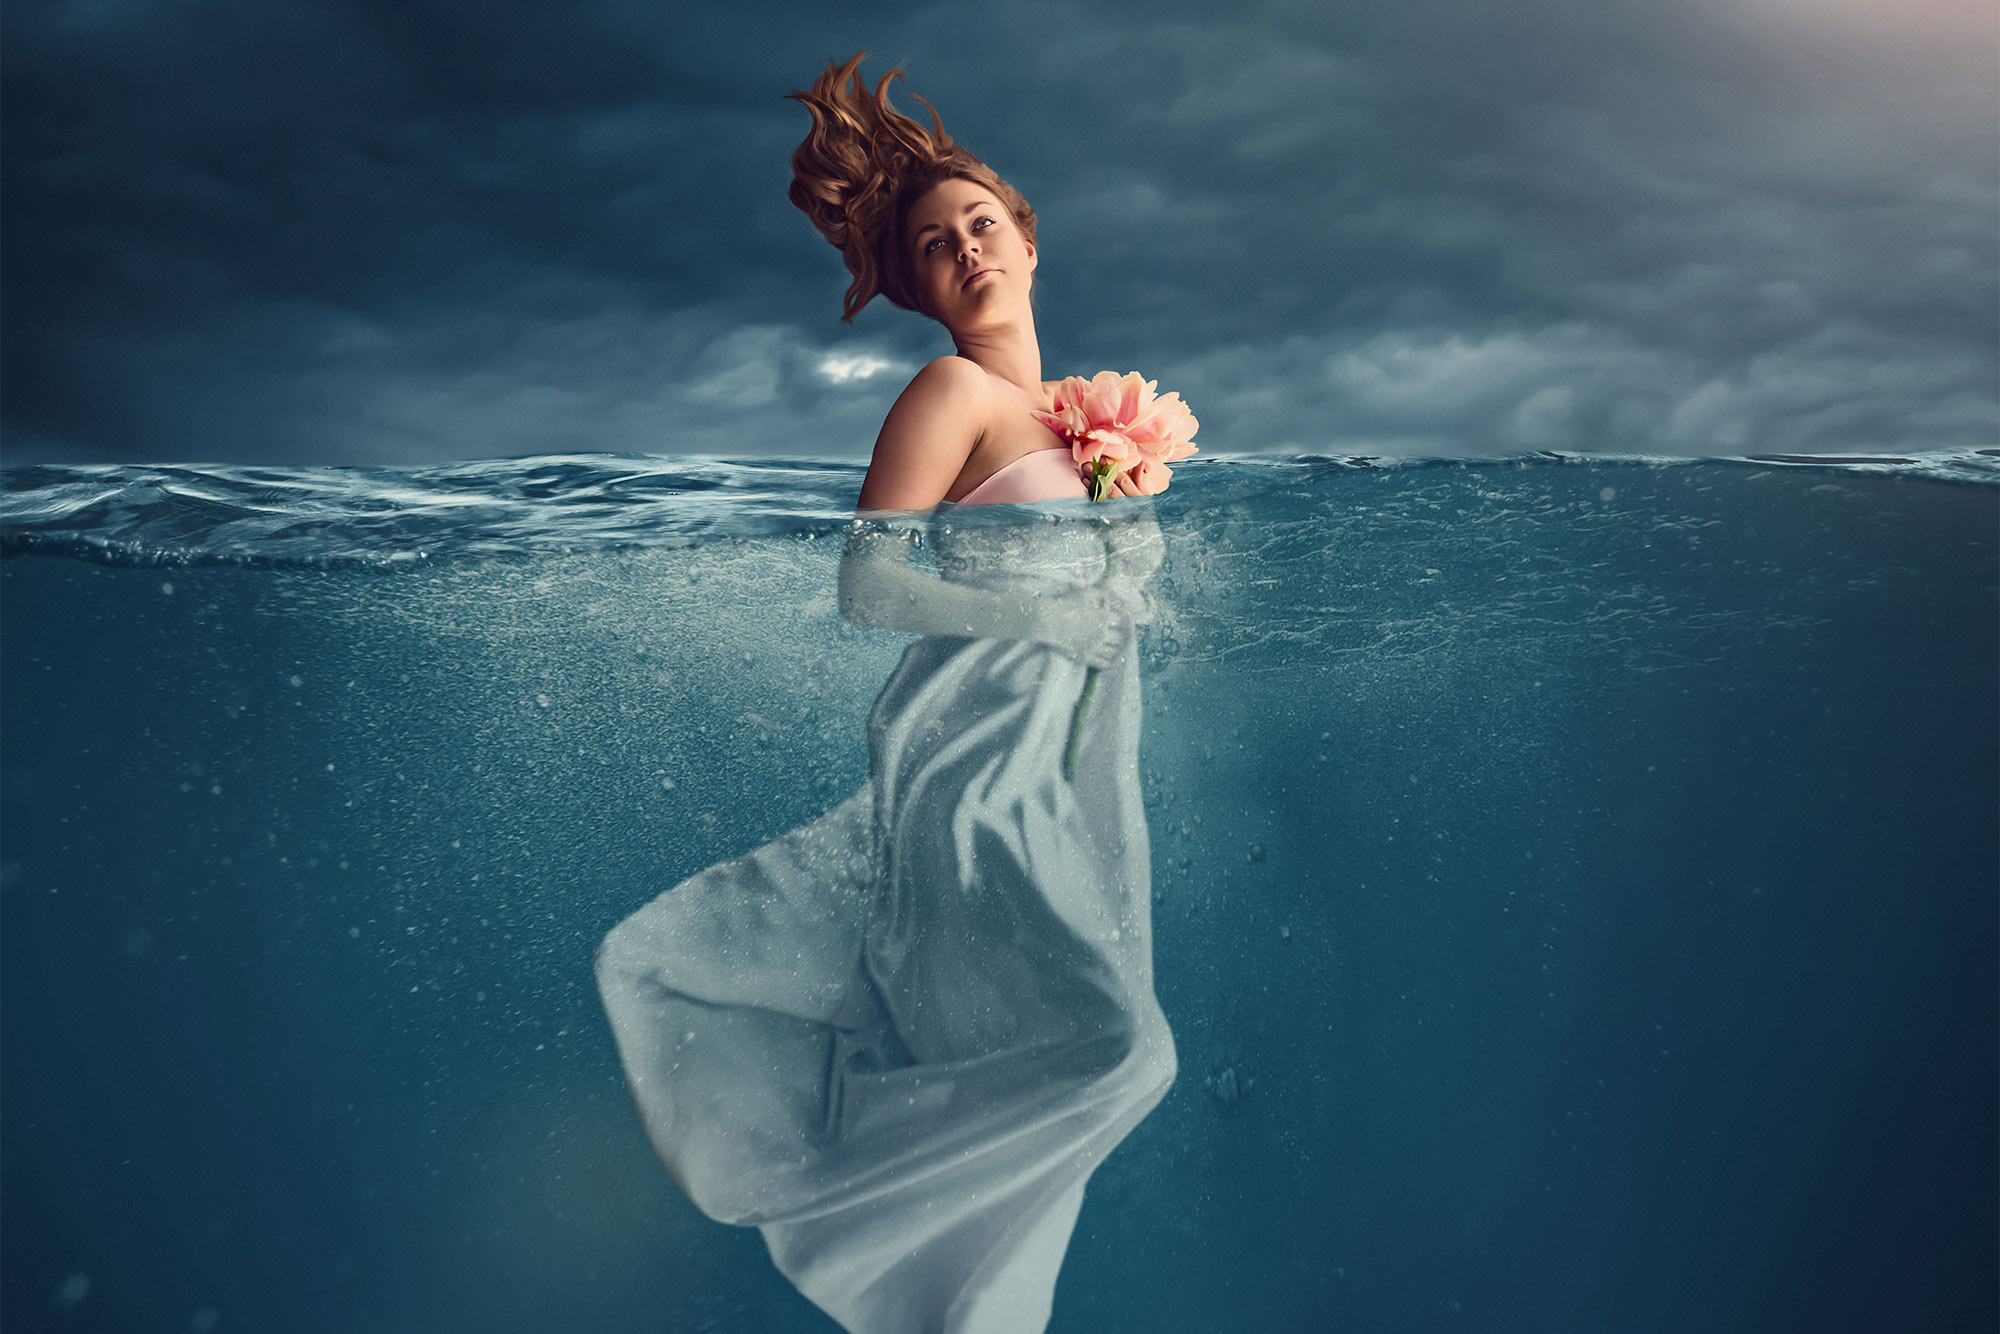 En kreativ bild på en kvinna halvt under vatten.